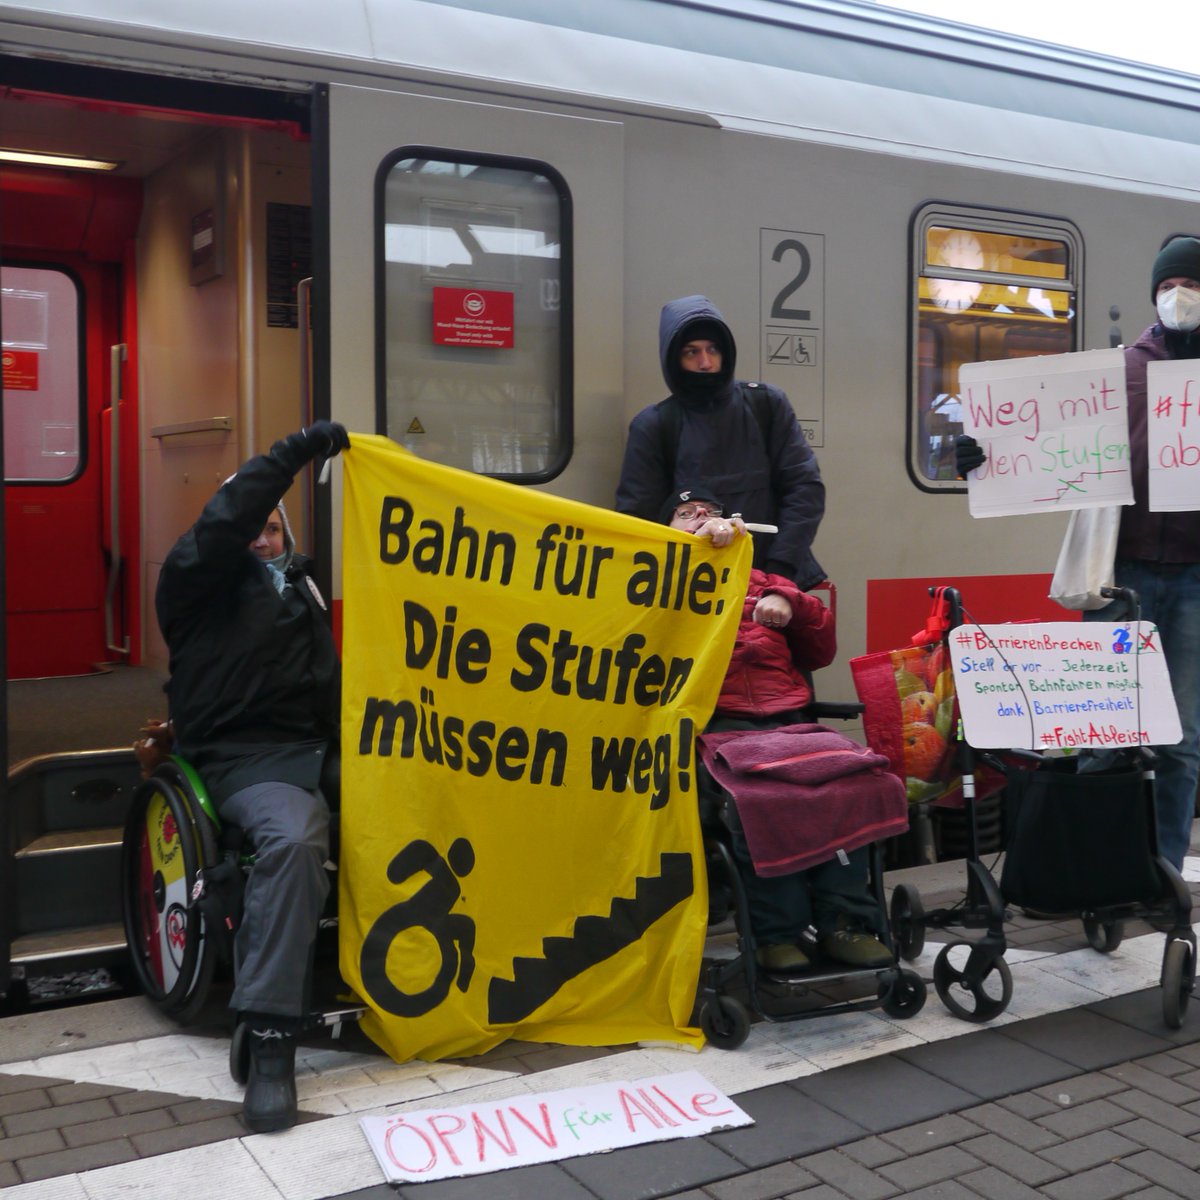 Stell dir vor... Jederzeit Spontan Bahnfahren. Möglich Dank #Barrierefreiheit
'Die Stufen müssen weg' 'Wir wollen spontan reisen'
Protestaktion von '#Lüneburg barrierefrei' am Bhf
#BarrierenBrechen #FightAbleism
#Bahn #BarriereBahn #InternationalerTagDerMenschenMitBehinderung